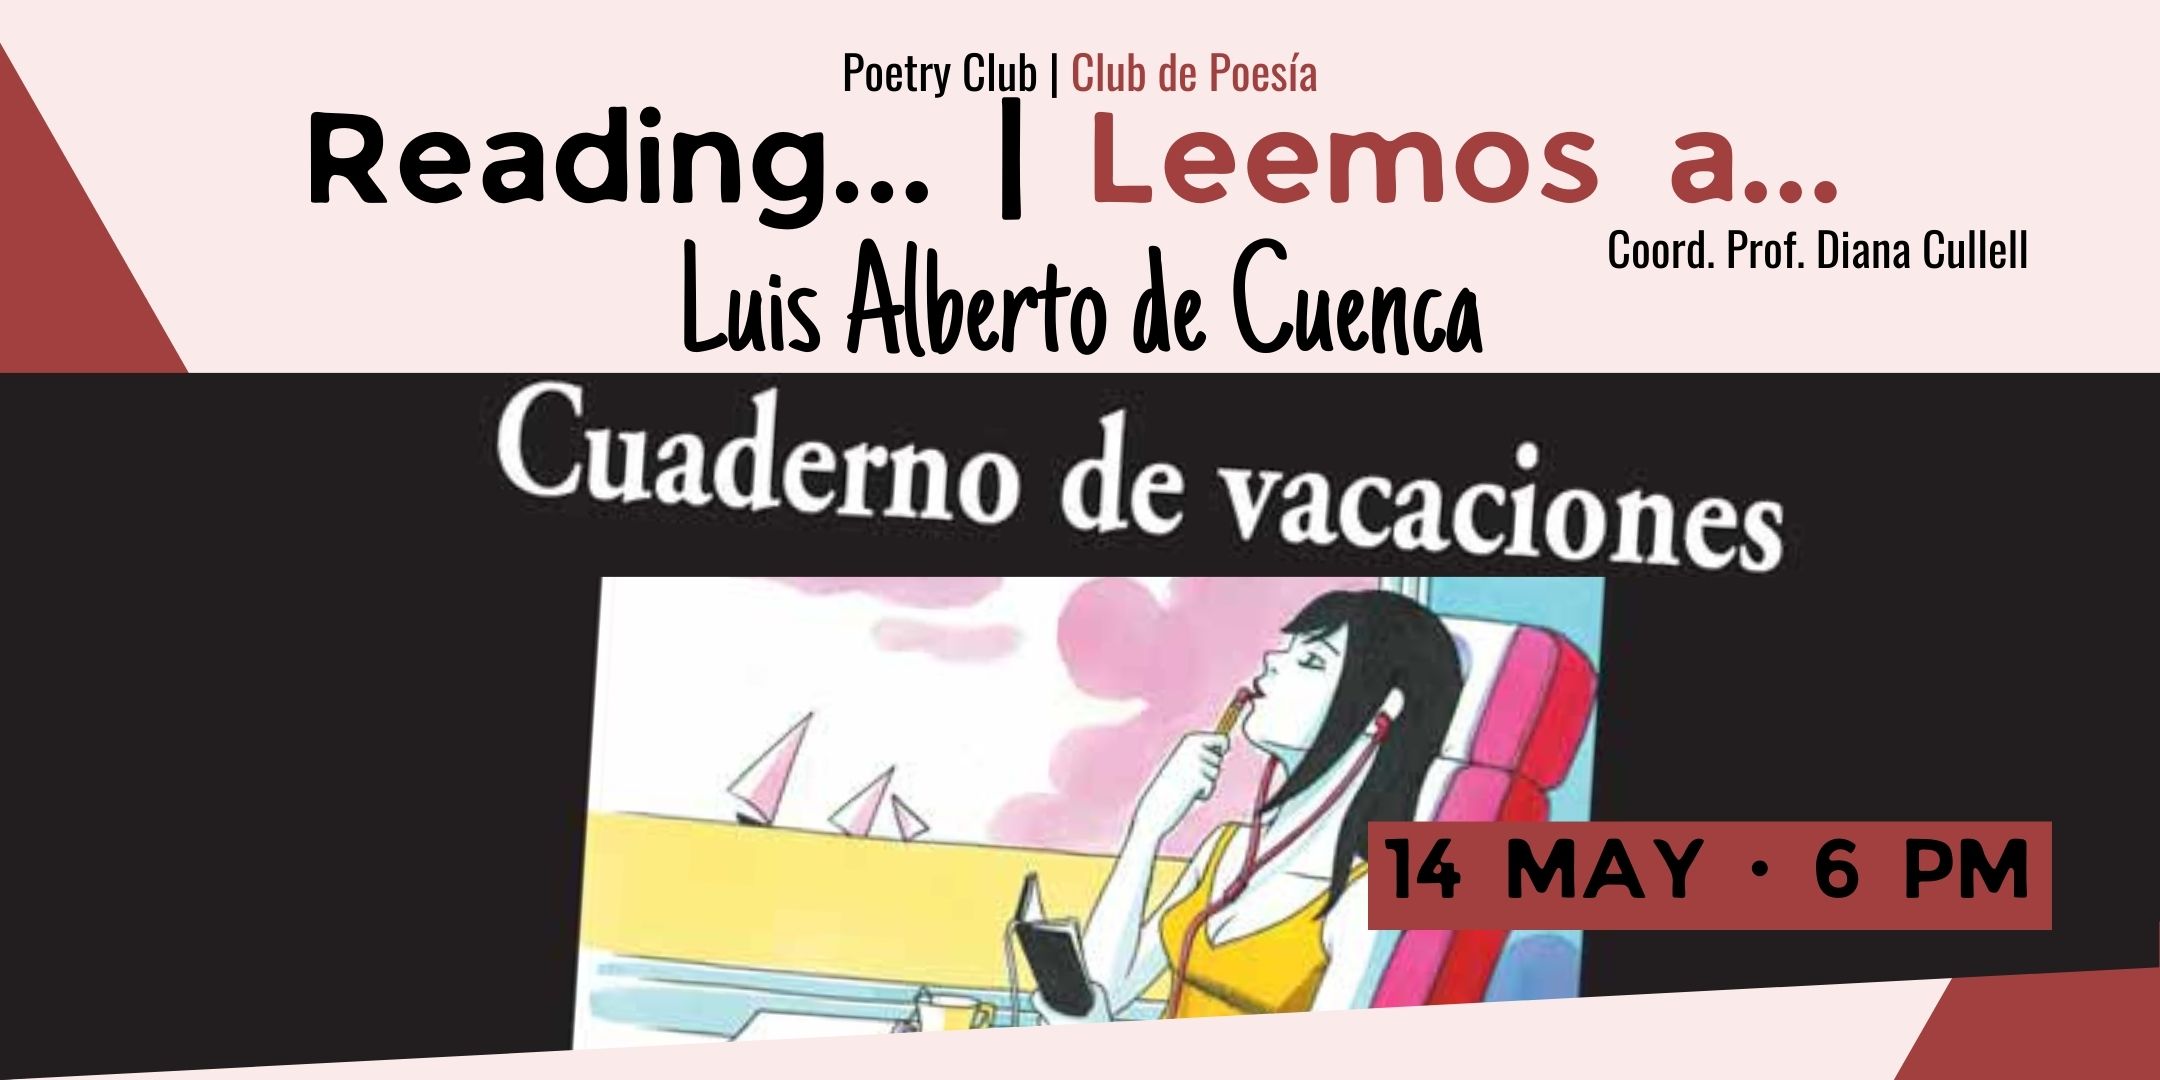 Reading... Luis Alberto de Cuenca